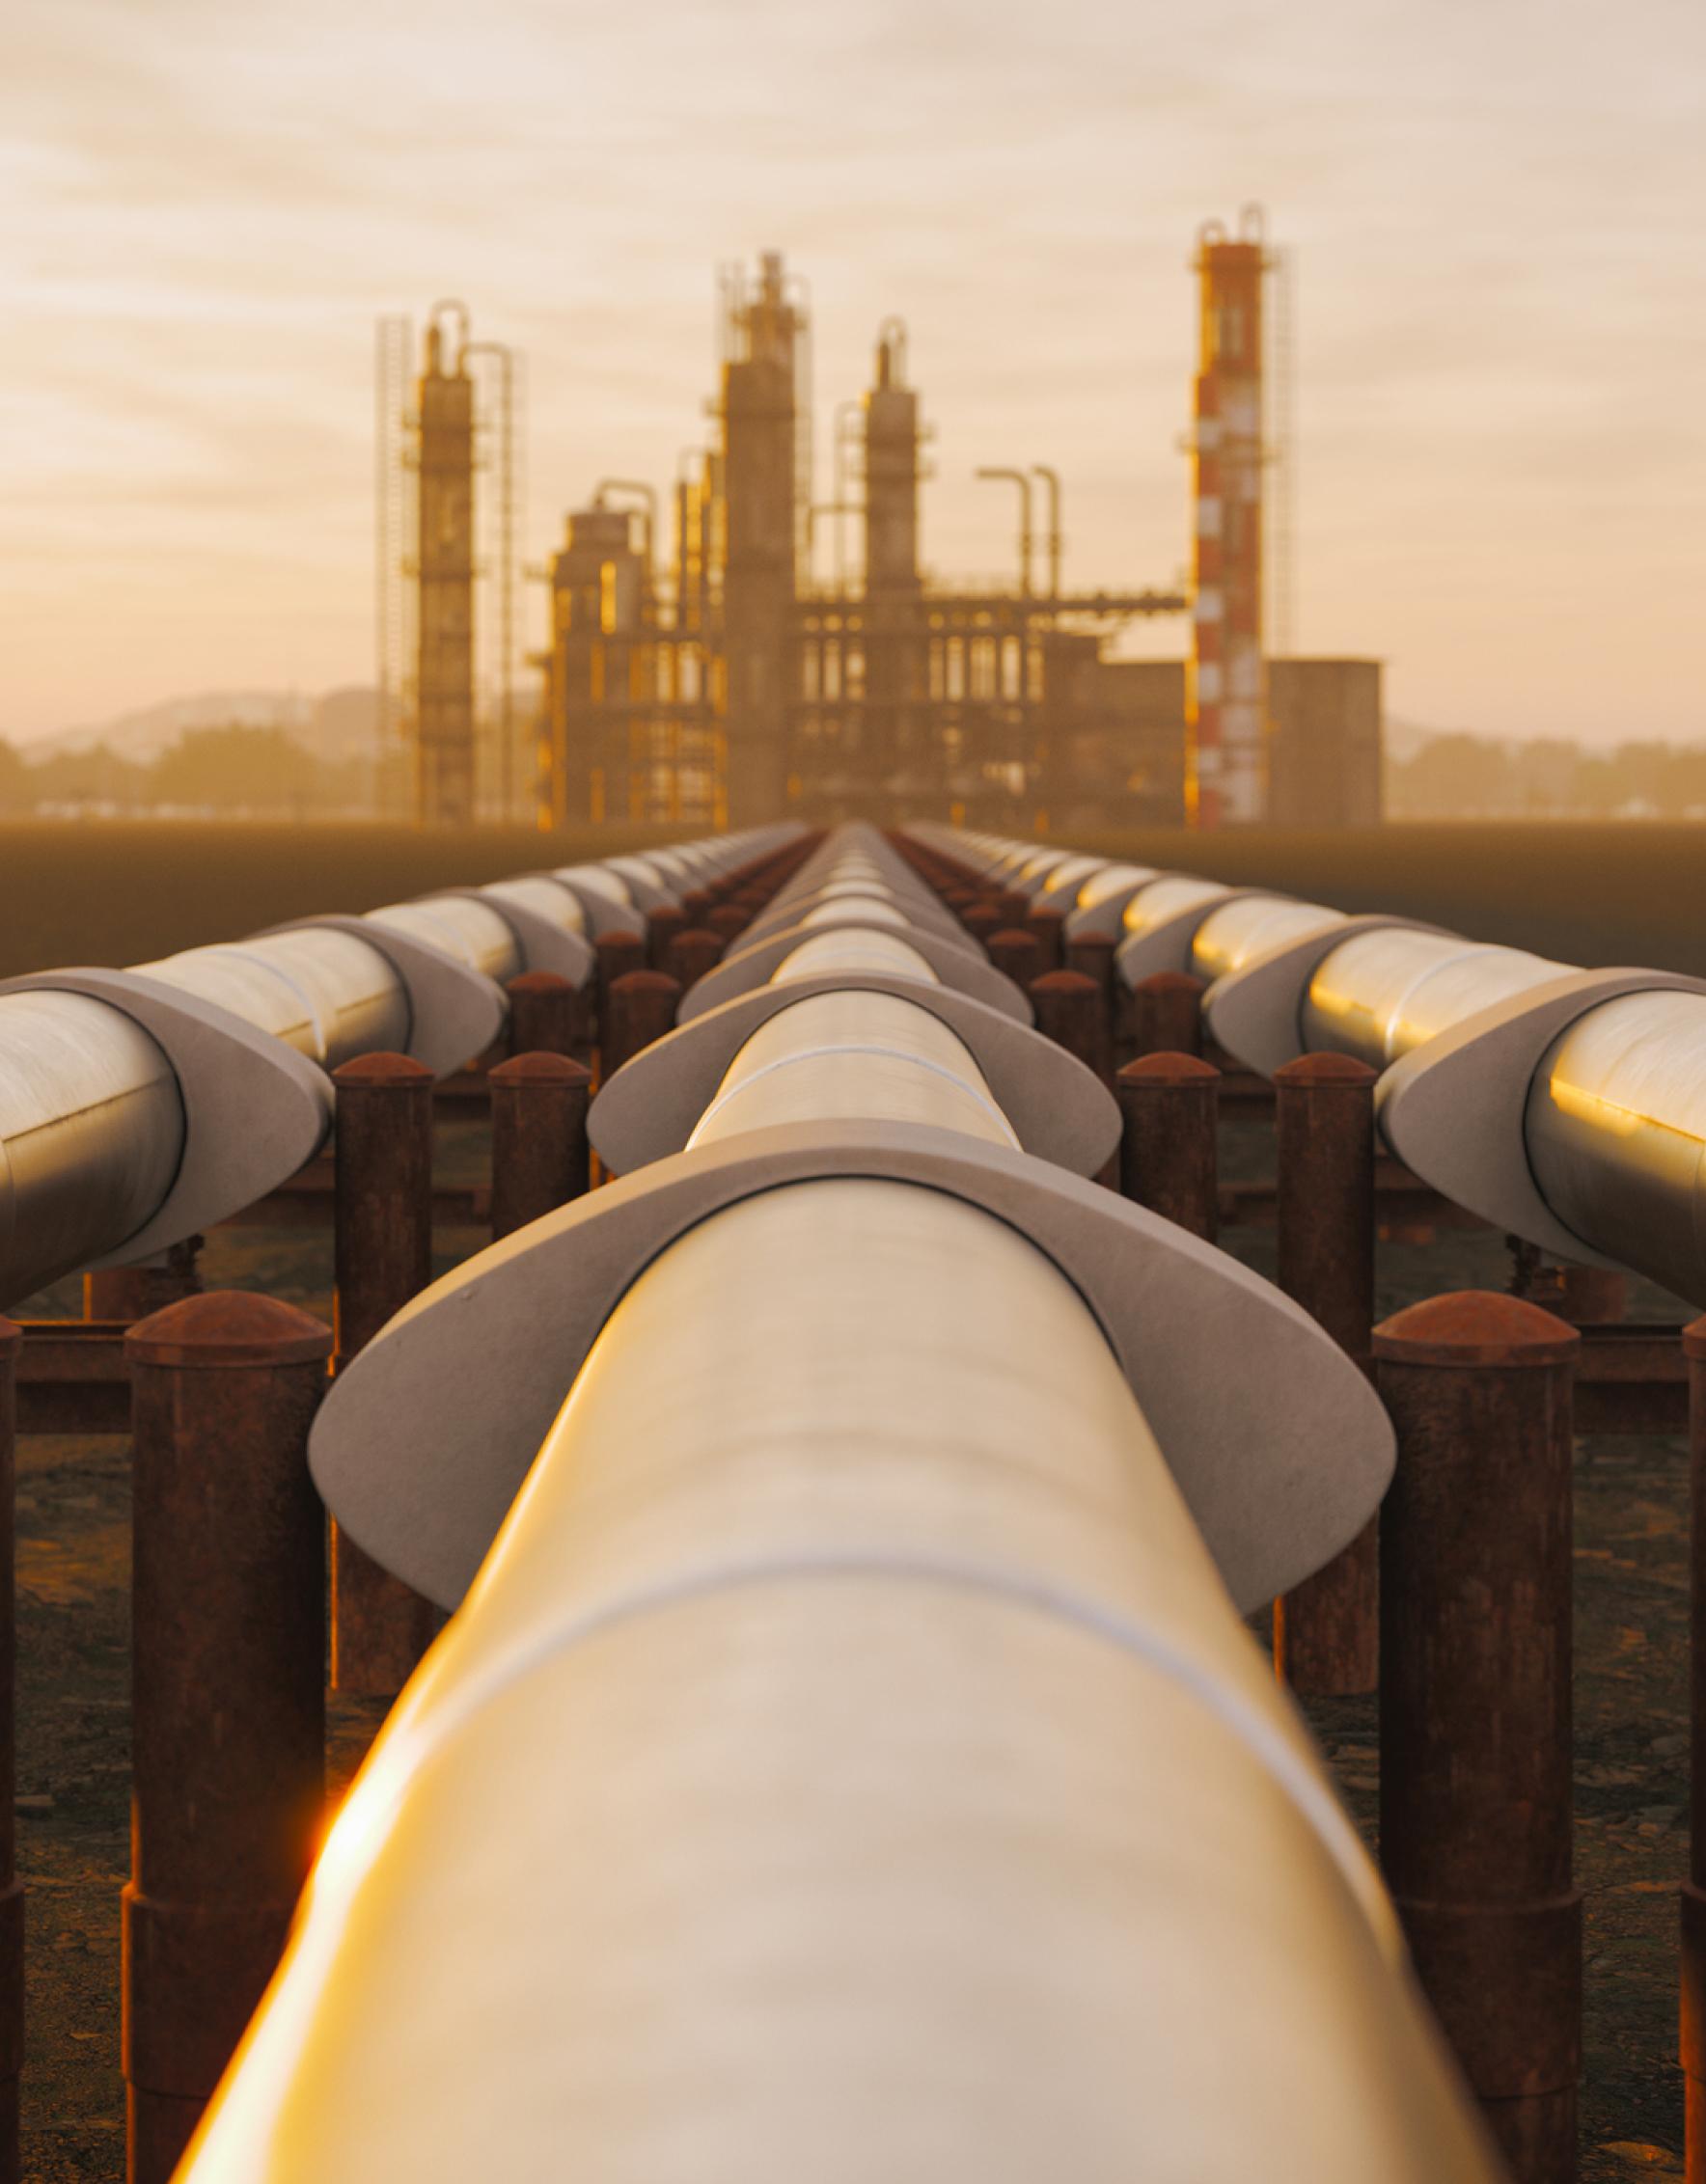 Tubos de aceite de acero de la refinería en el desierto durante la puesta de sol.